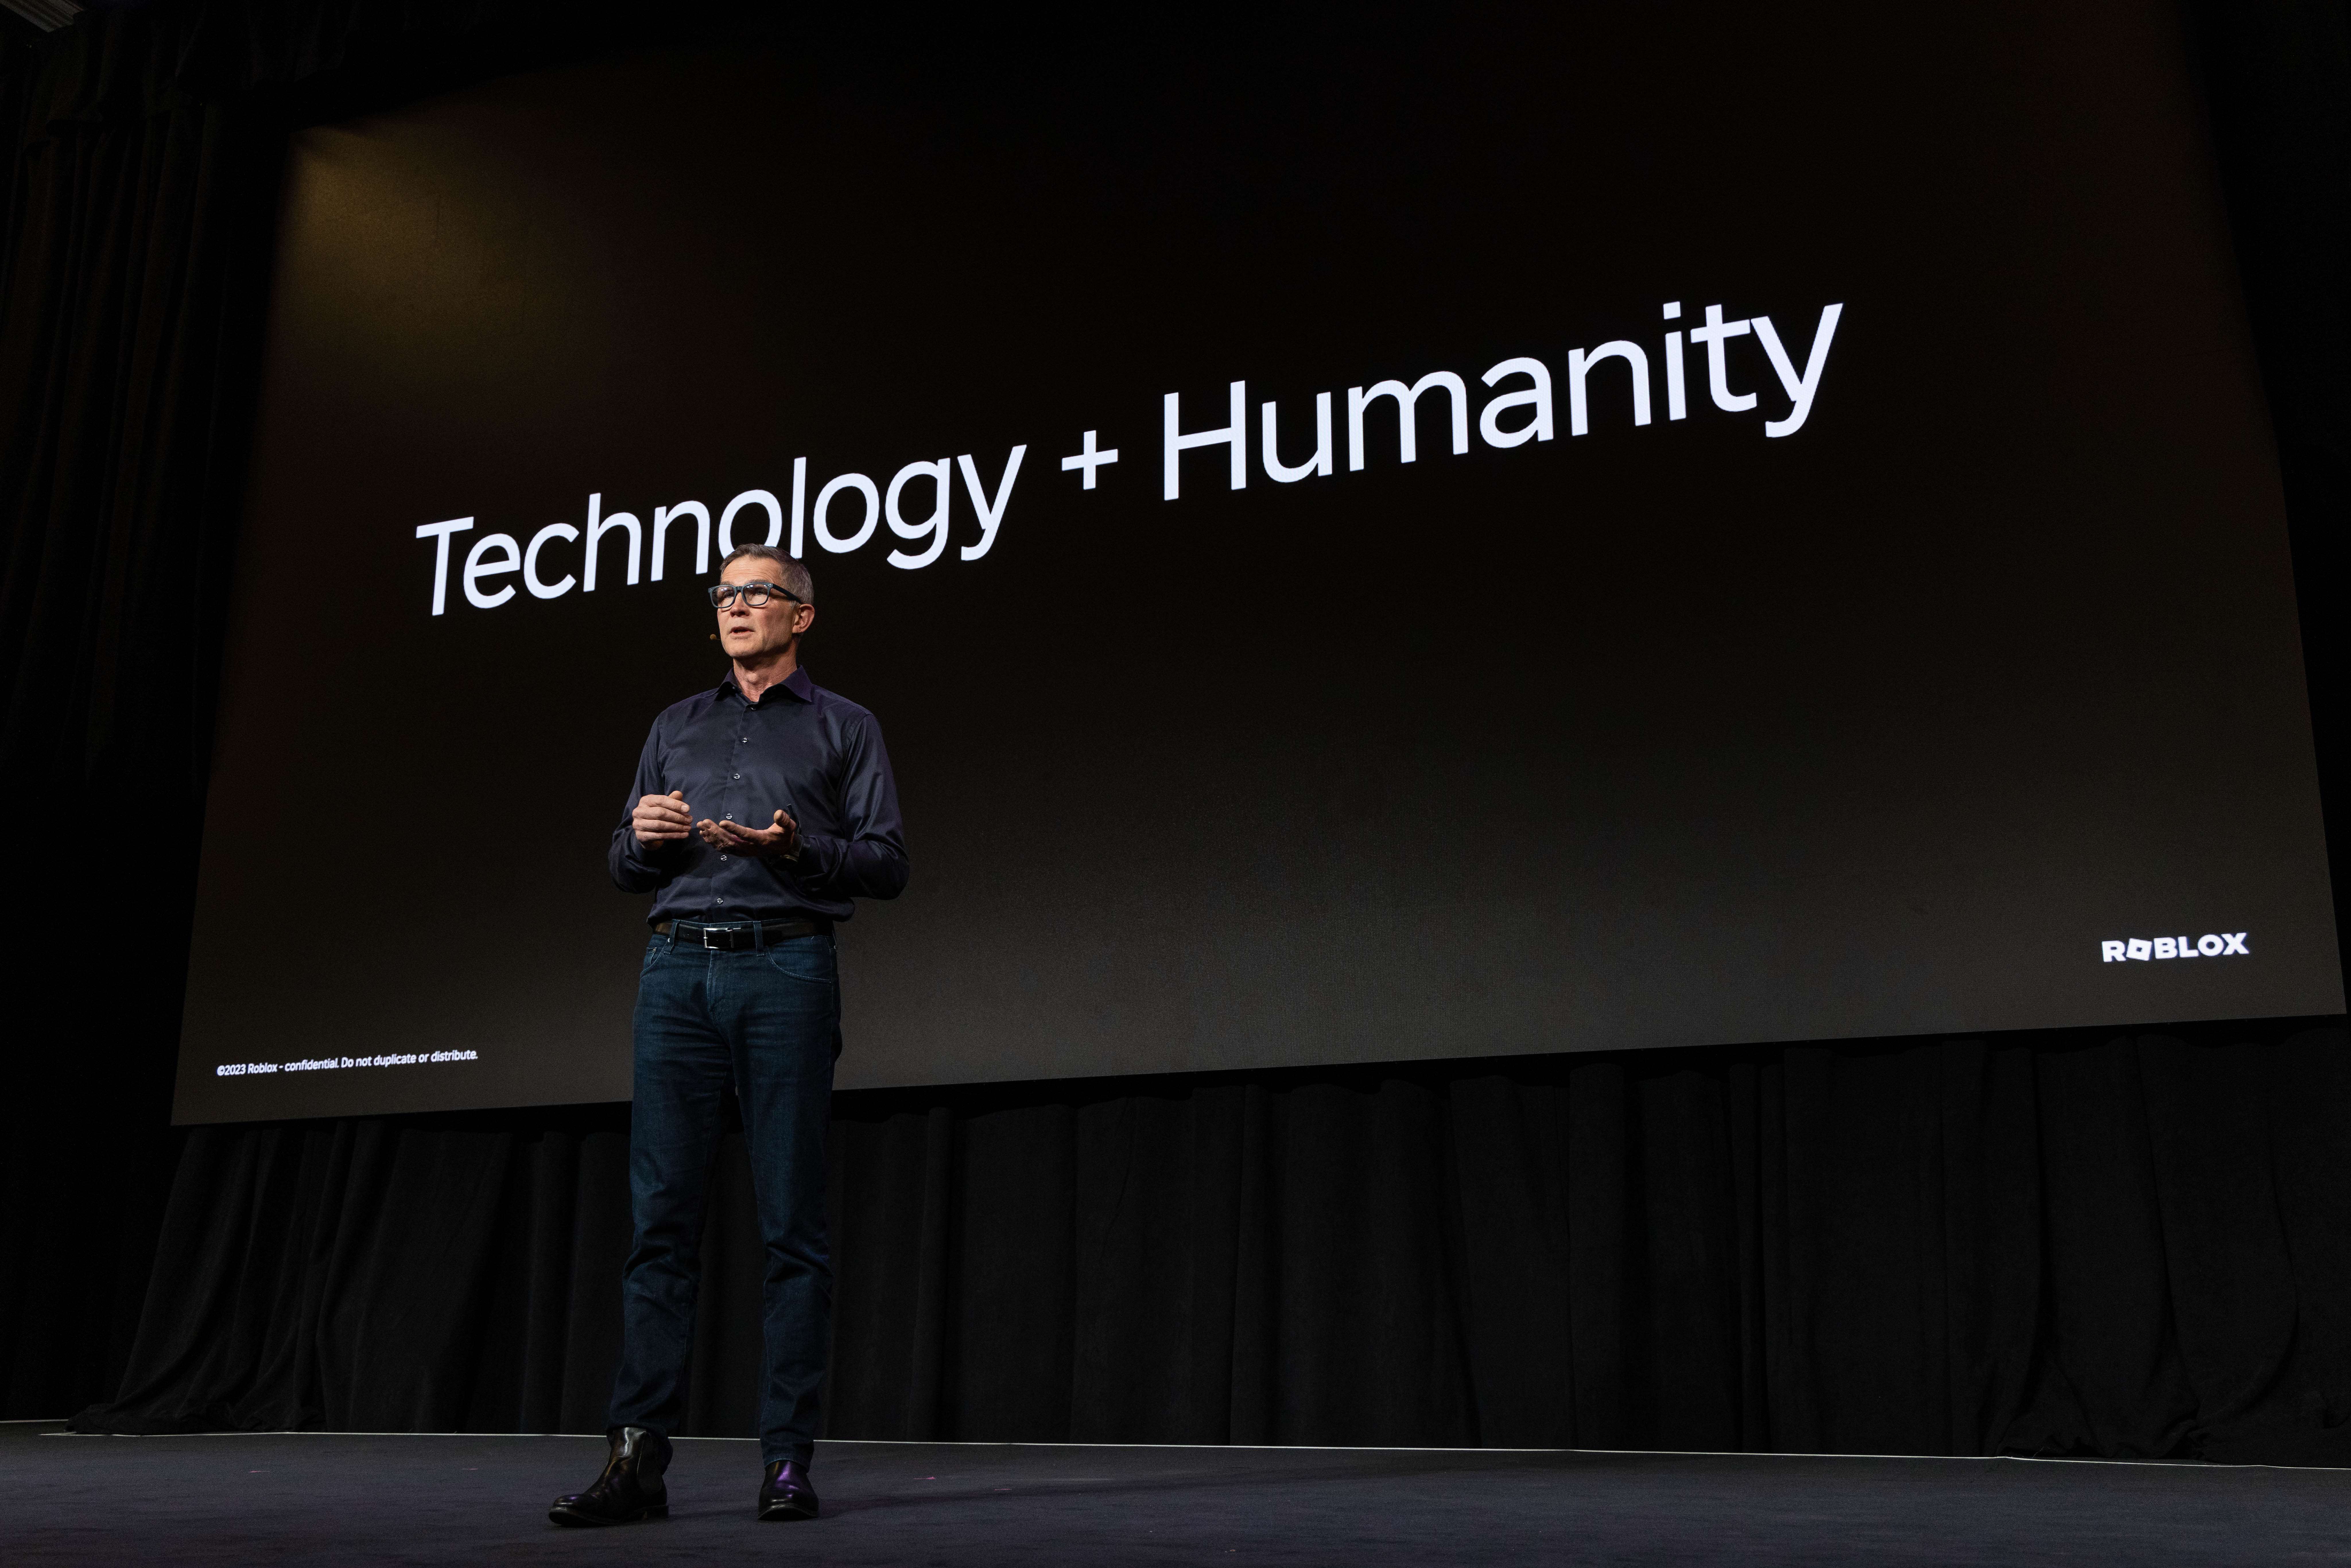 Ο David στέκεται στη σκηνή μπροστά από μια τσουλήθρα που λέει Technology + Humanity